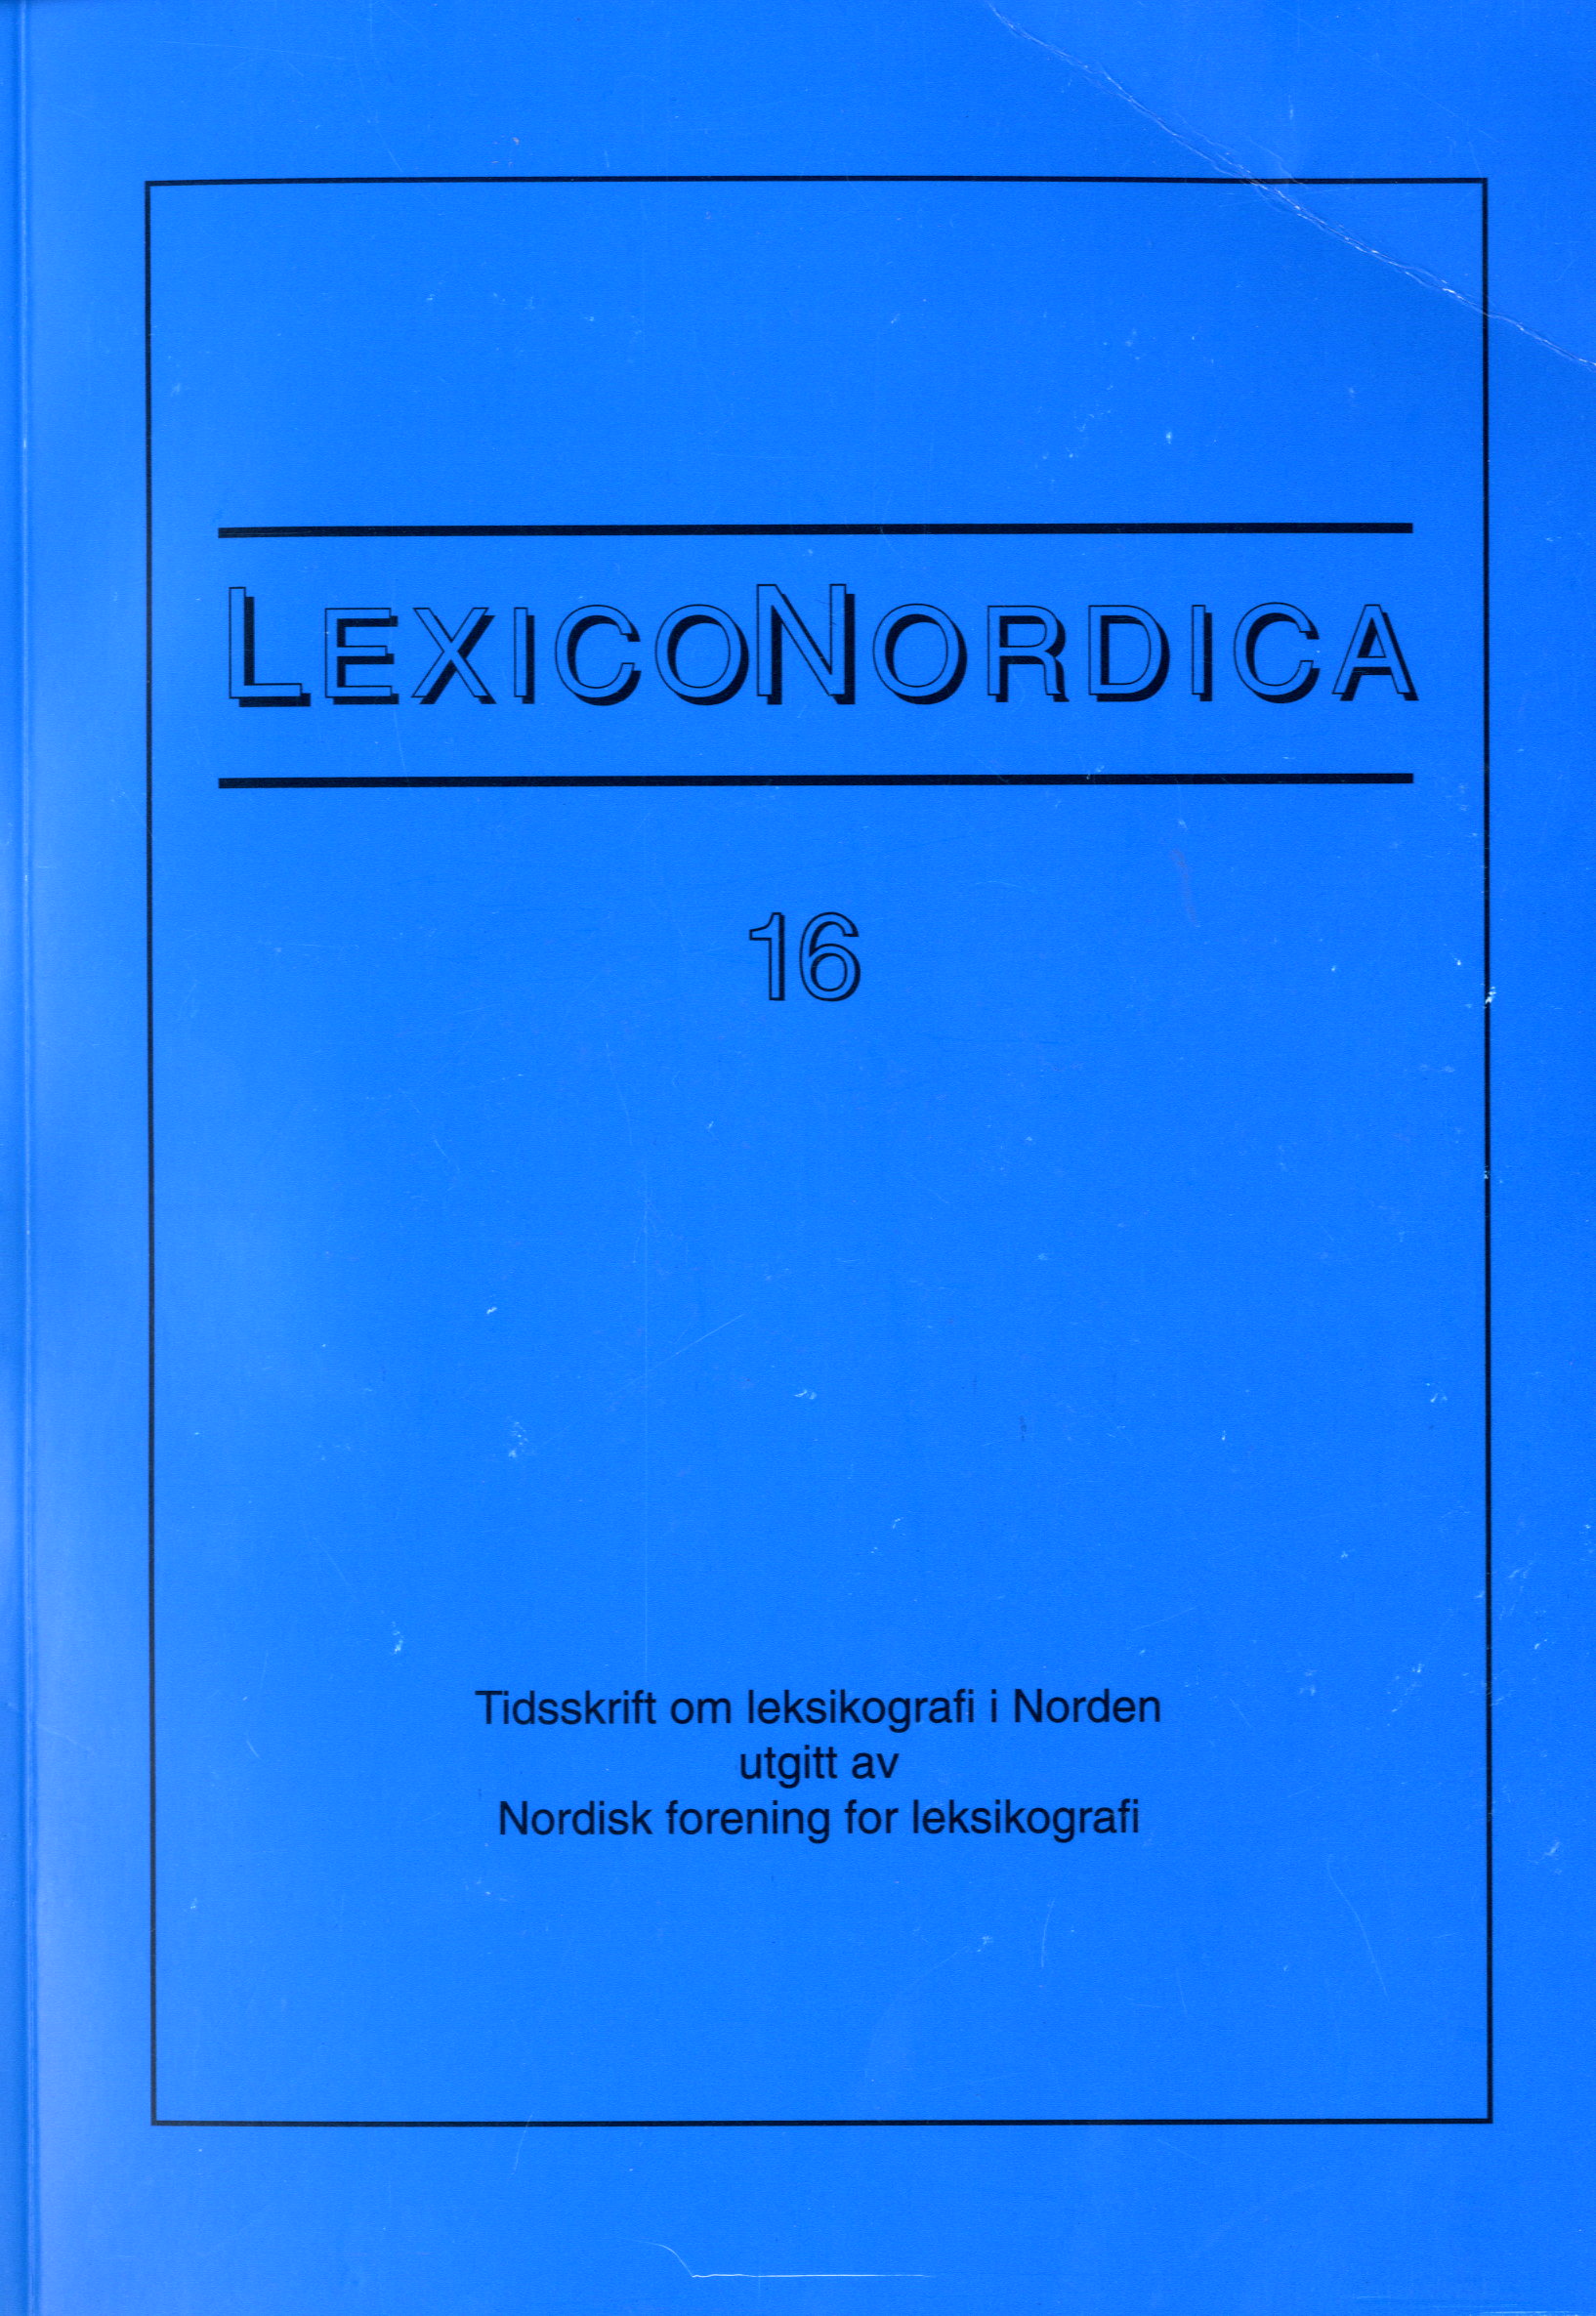 					Se Nr. 16 (2009): Ordforbindelser i monolingvale nordiske ordbøger
				